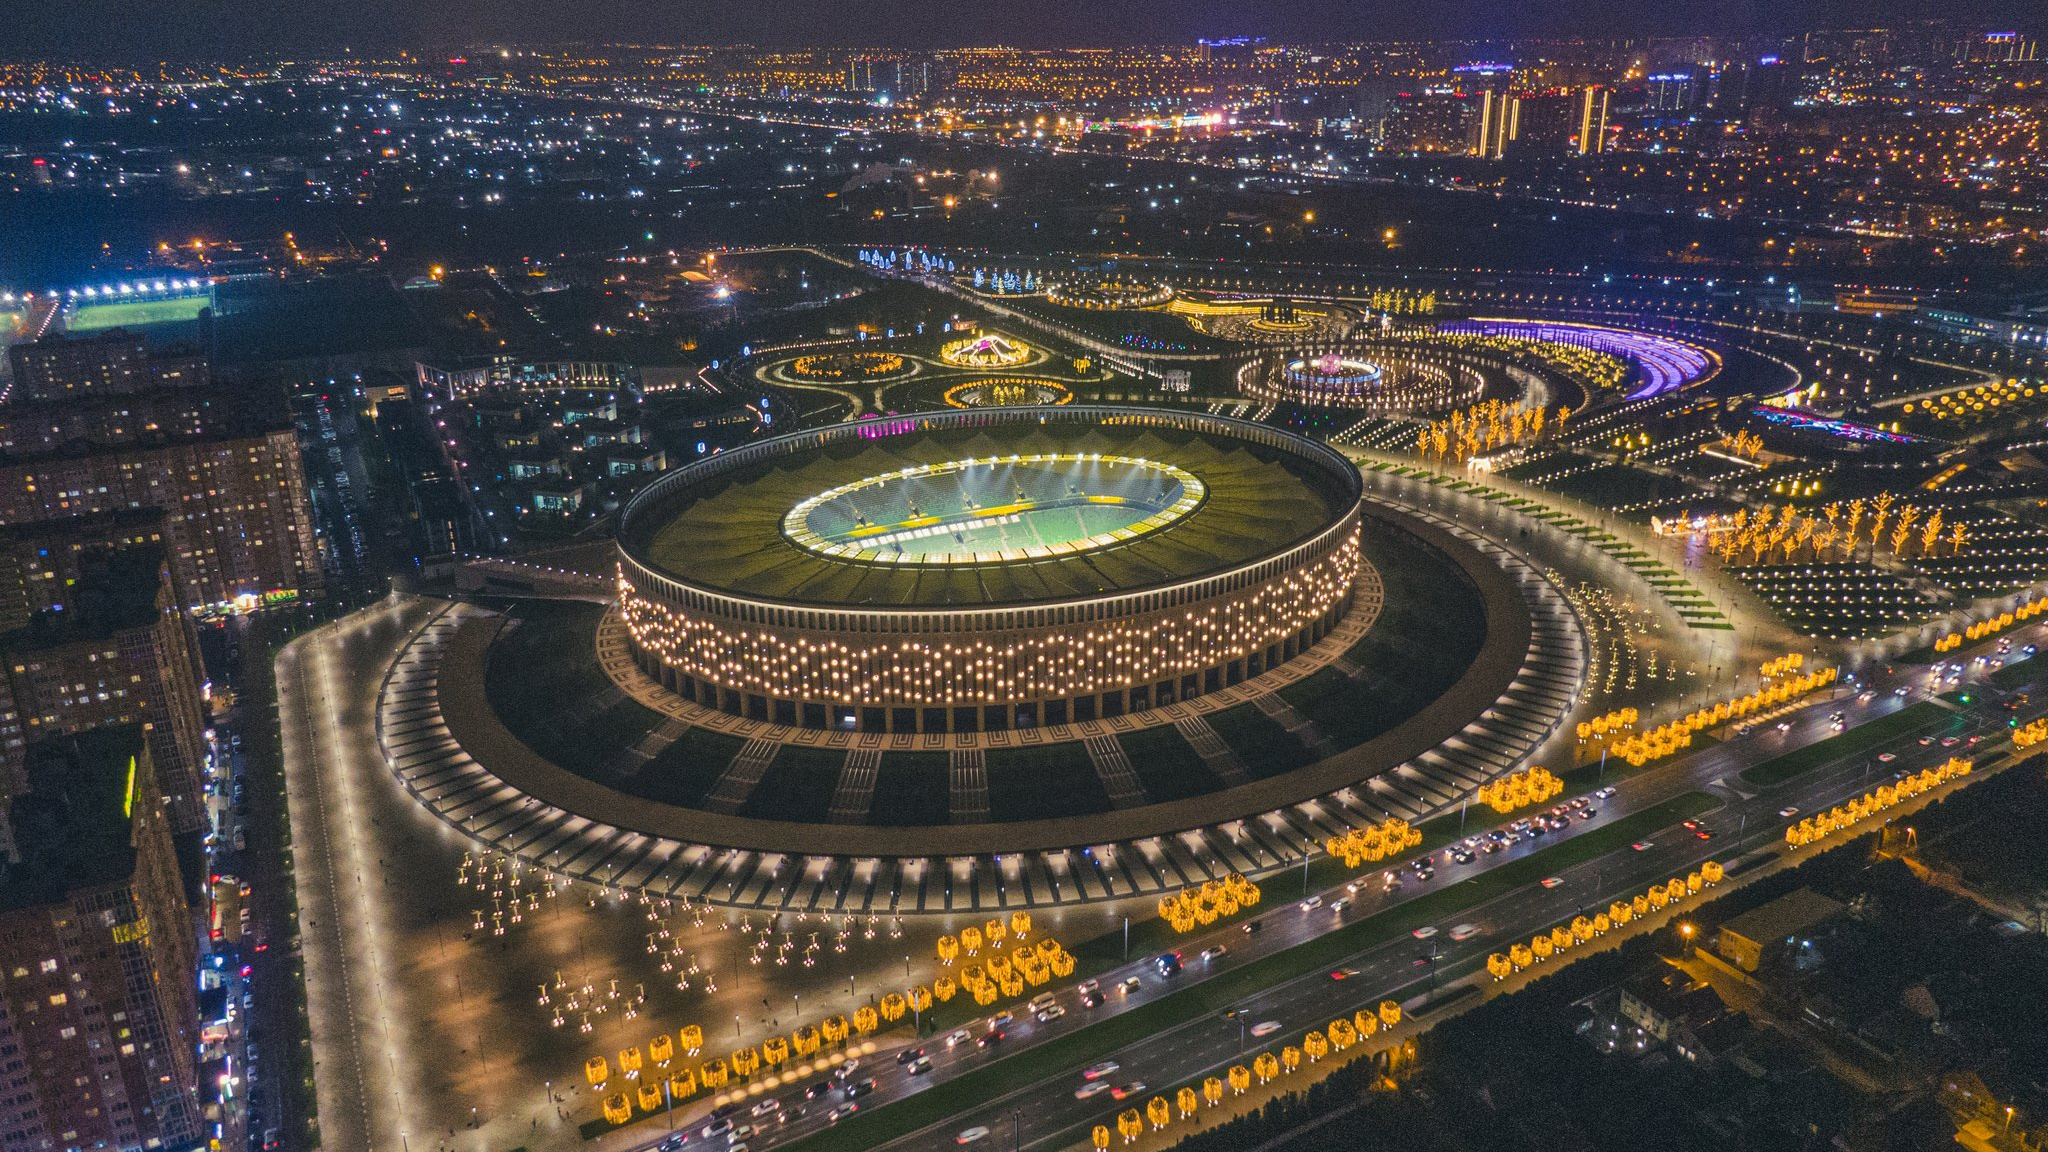 Стадион и парк «Краснодар» полностью нарядили к Новому году. Скорее посмотрите на эту фантастическую красоту!